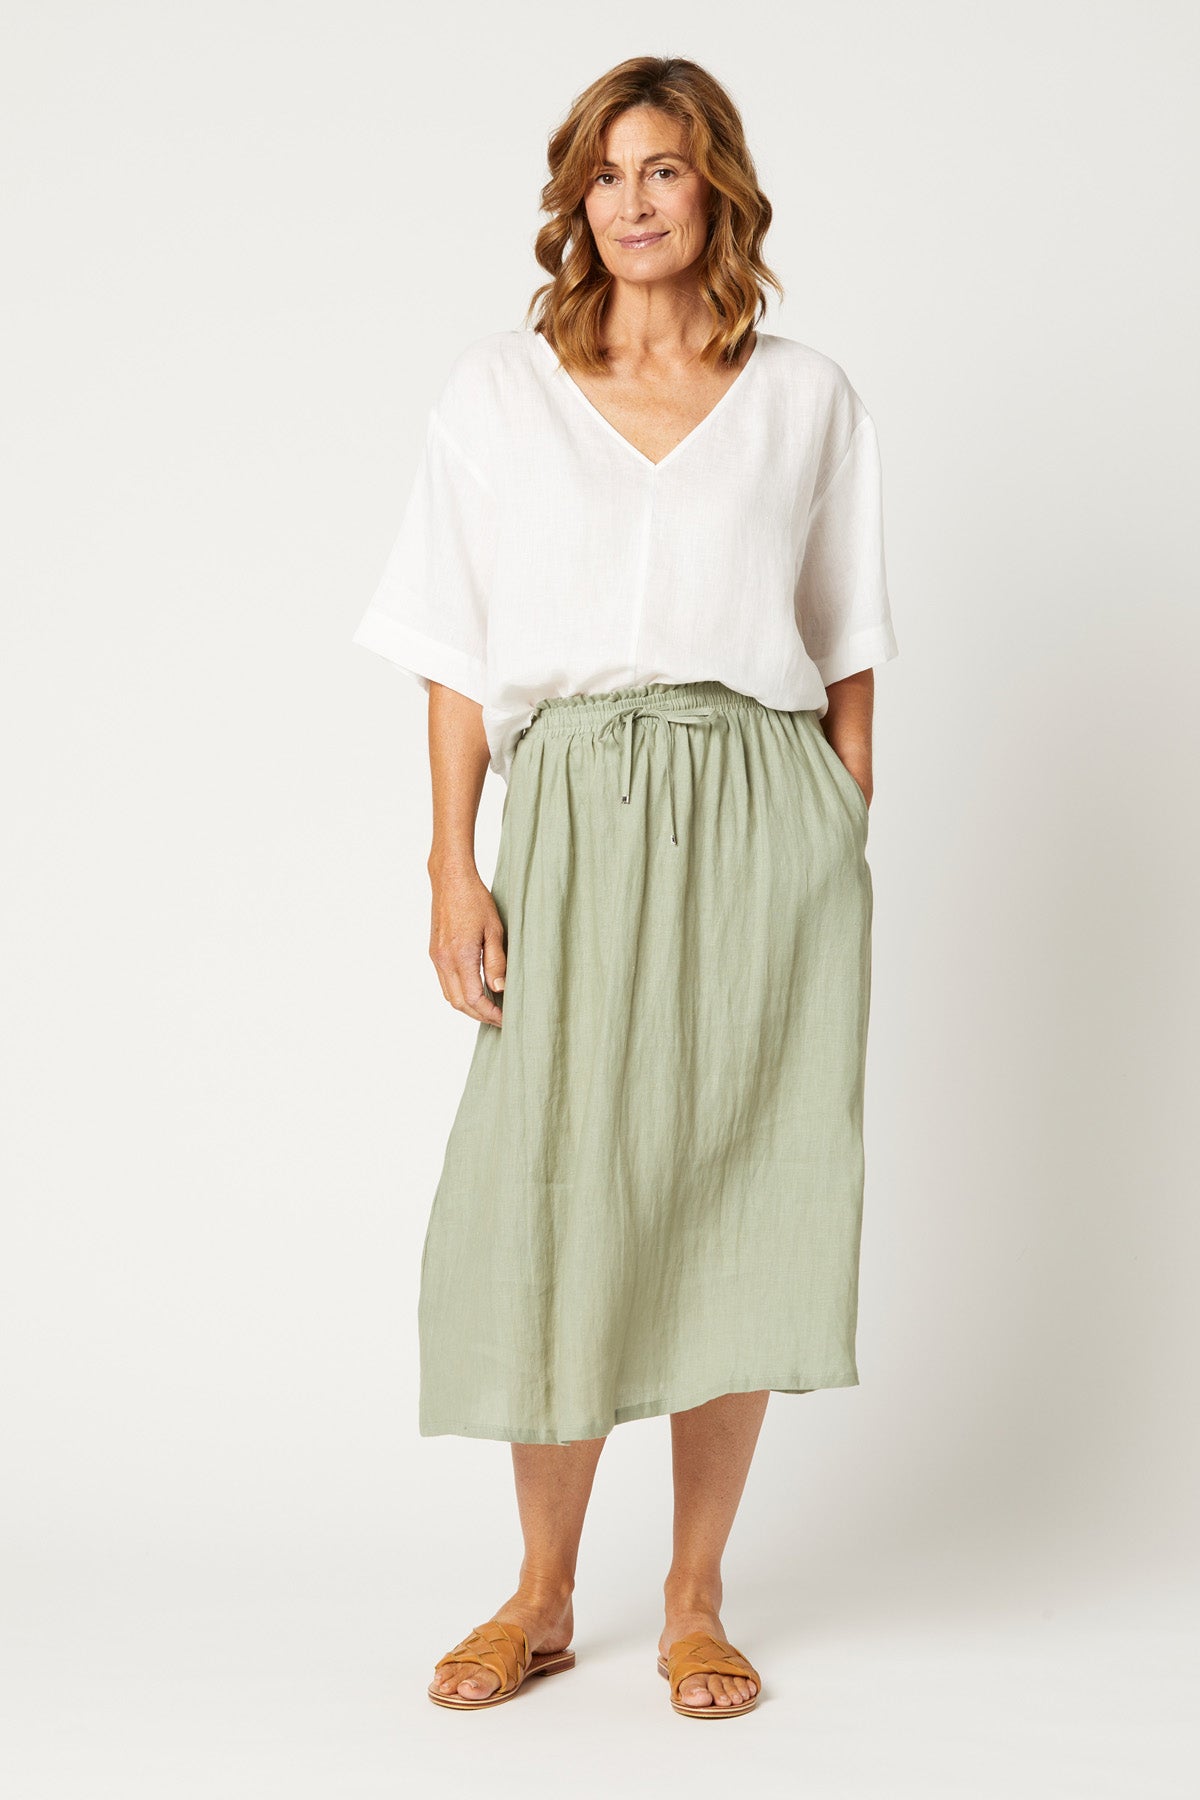 Nala Skirt - Sage - eb&ive Clothing - Skirt Mid Linen